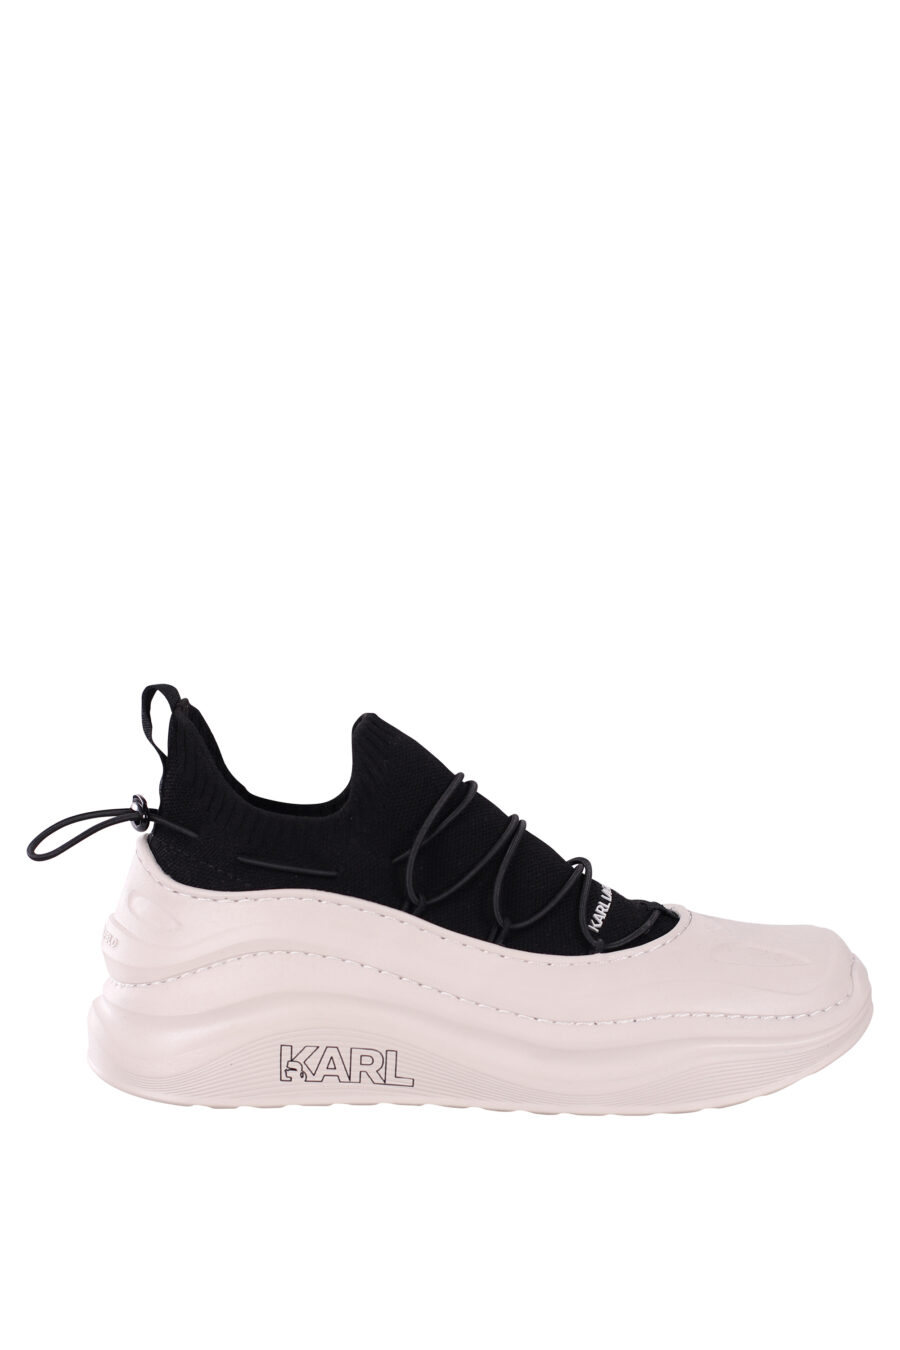 Zapatillas bicolor blancas y negras con suela blanca ondulada - IMG 5875